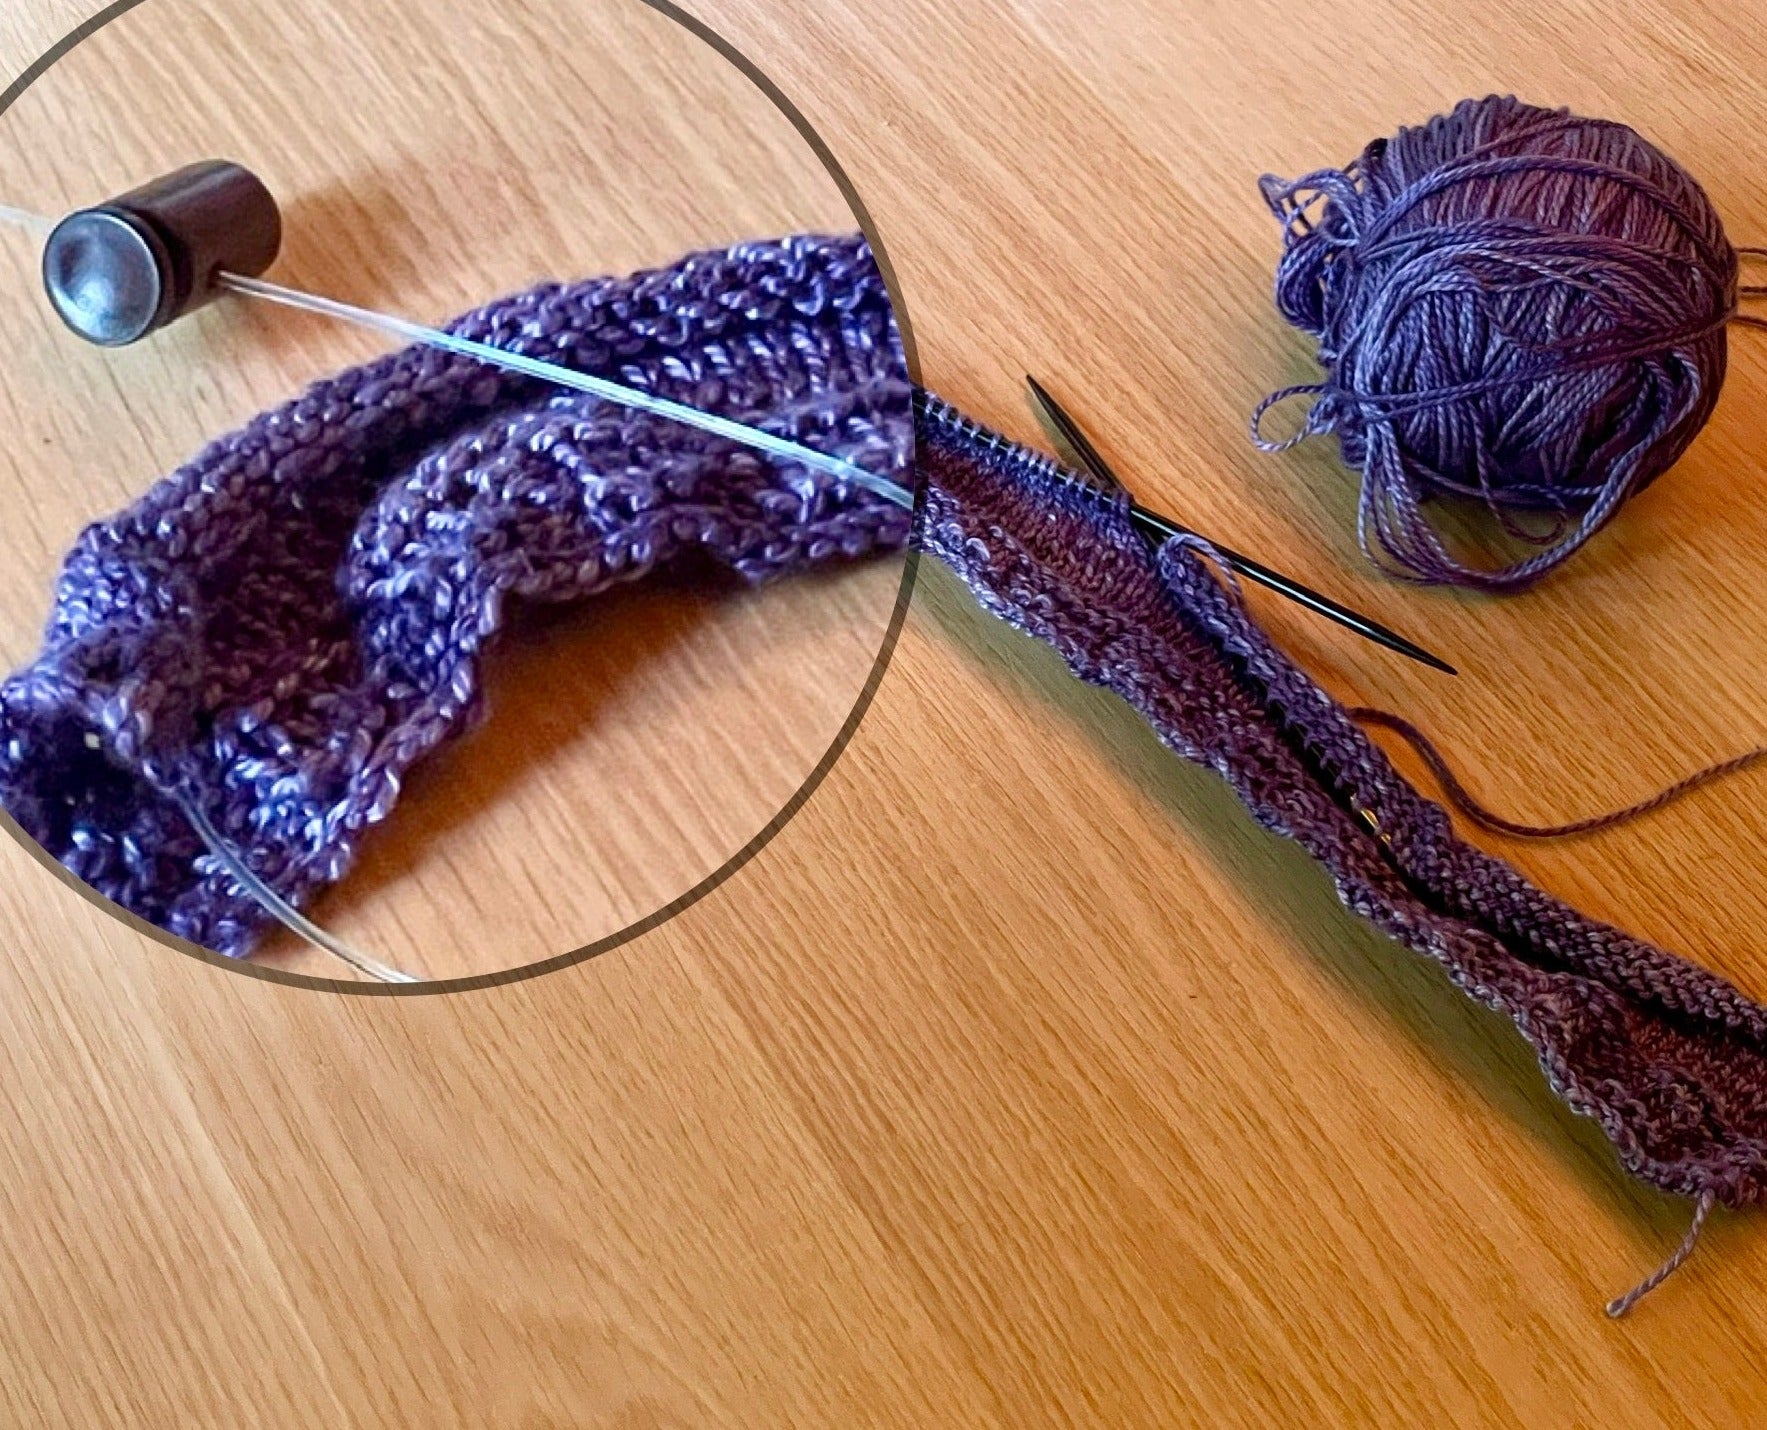 ROSE WOOD CROCHET Hooks set of 7 Knitting, Crocheting 